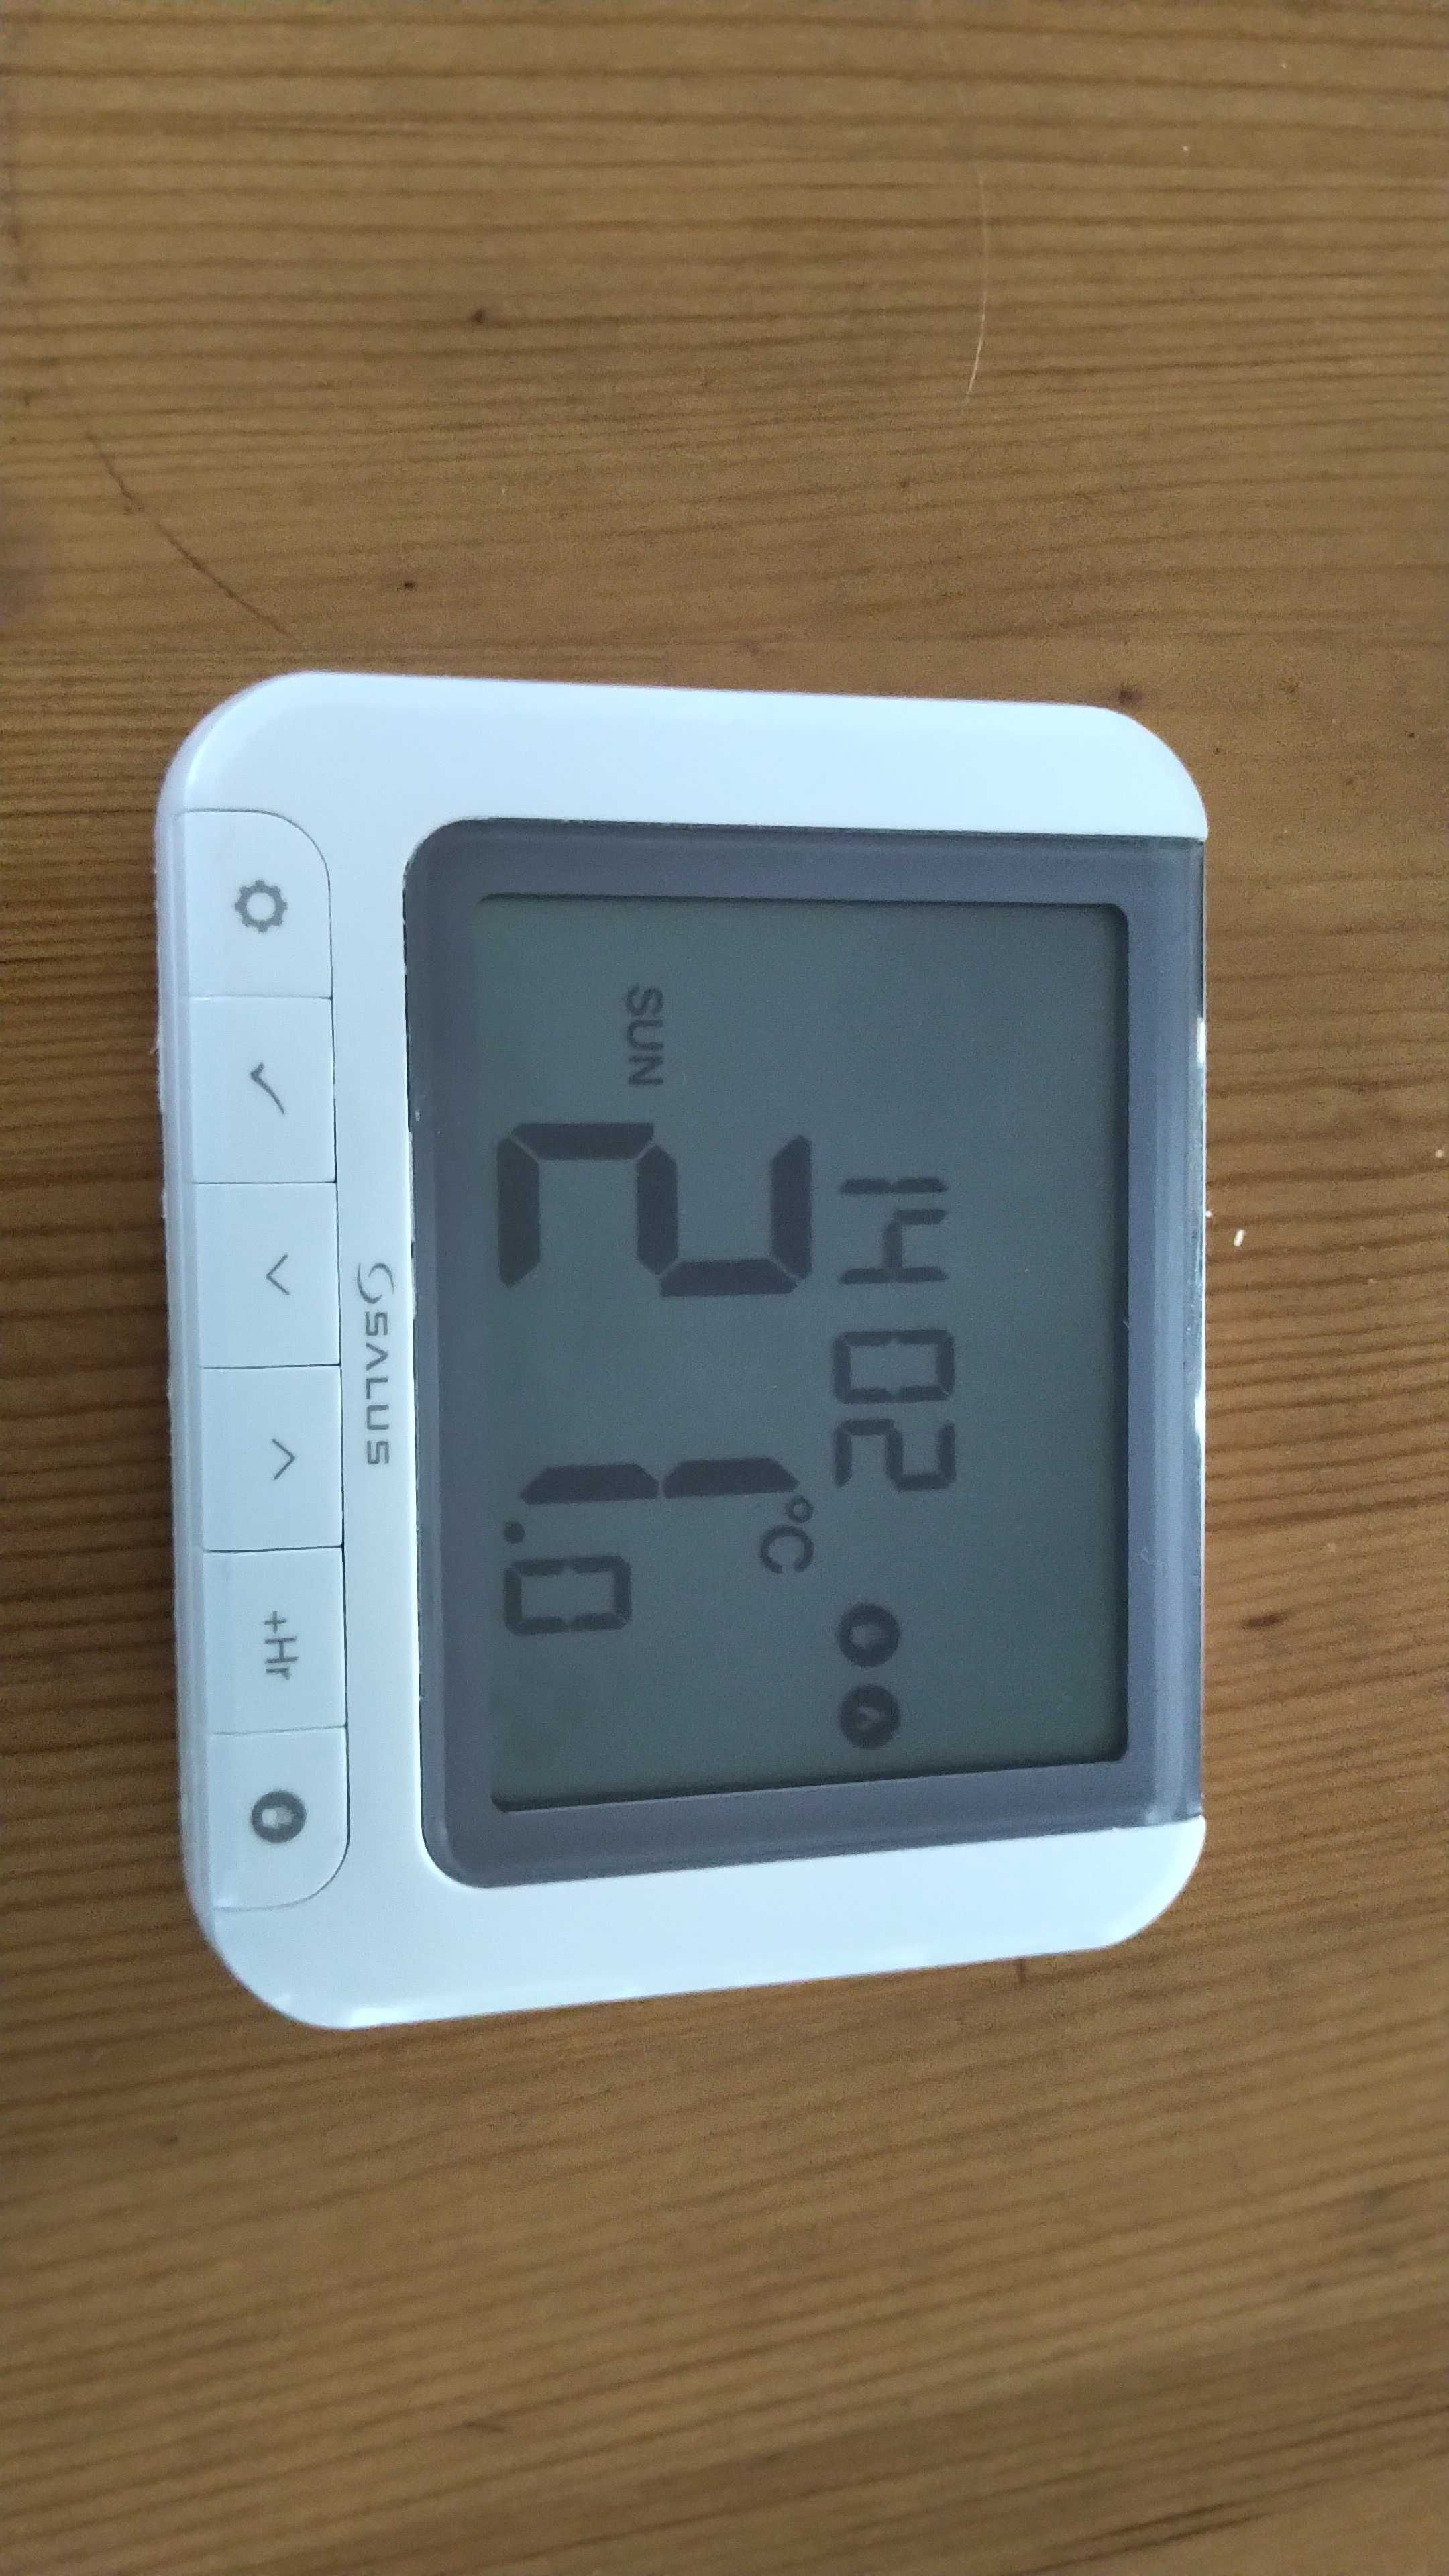 Sterownik temperatury SALUS RT520 Tygodniowy regulator temperatury